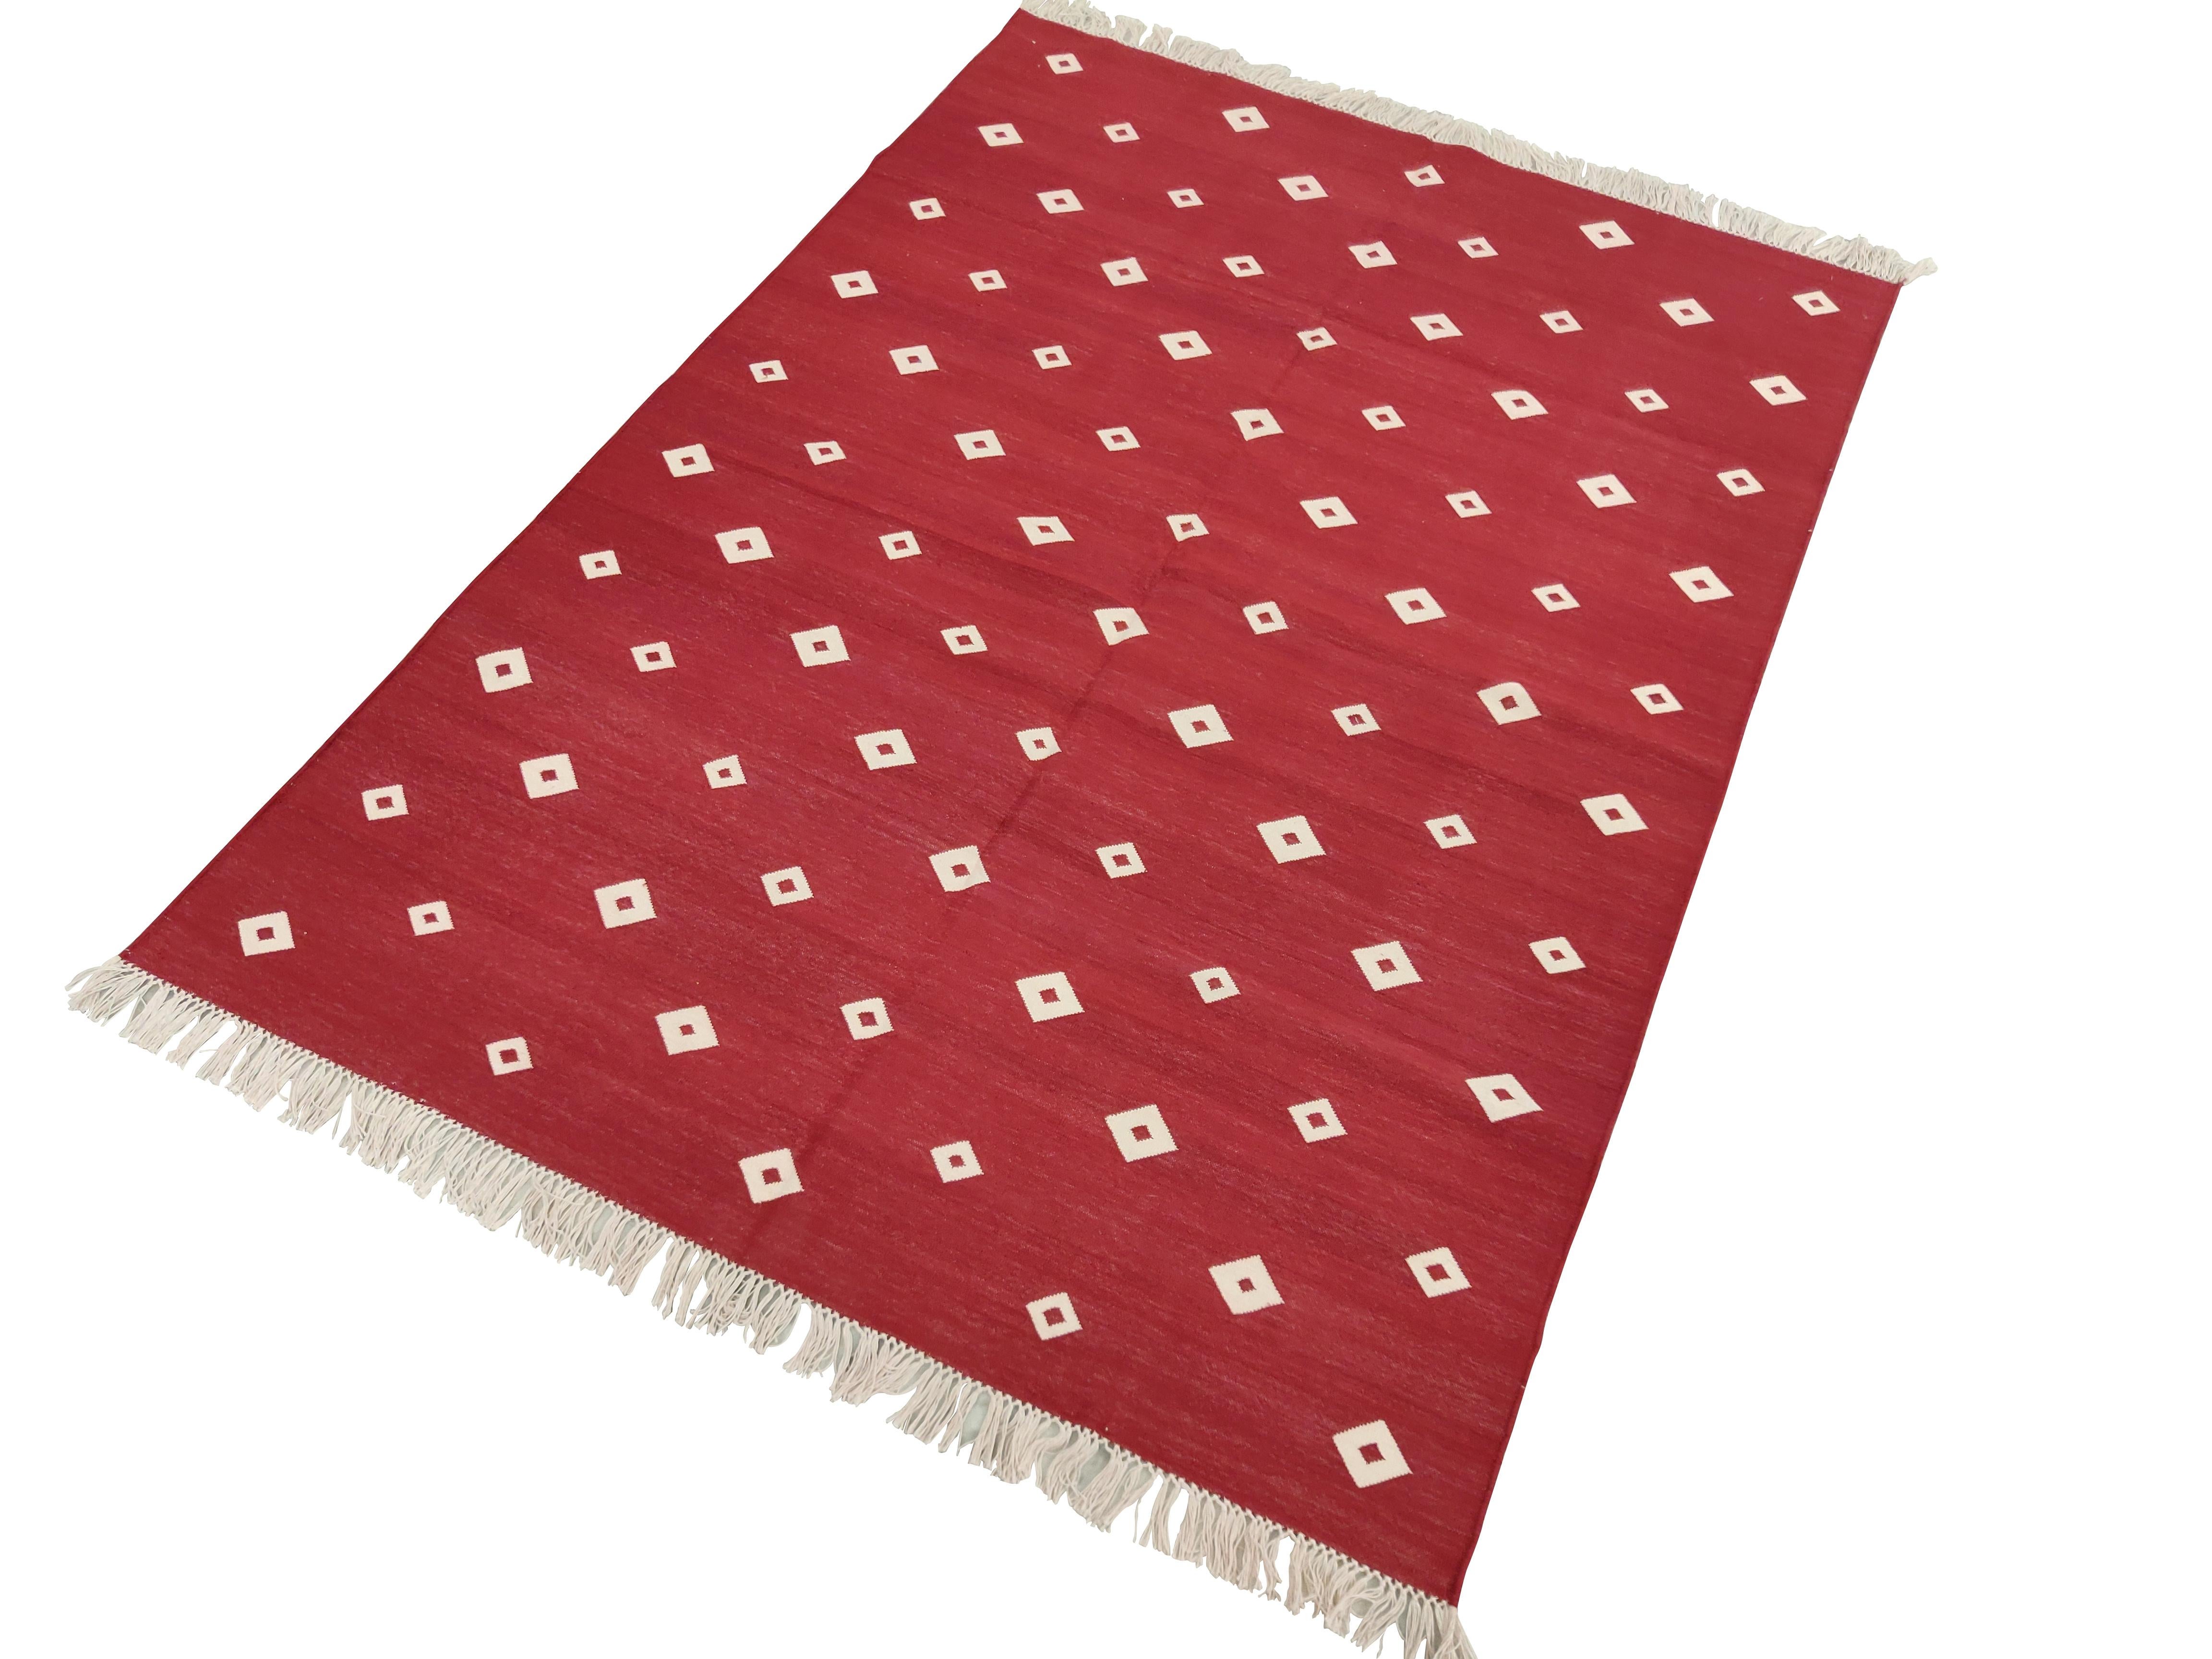 Baumwolle pflanzlich gefärbt rot und weiß Diamant indischen Dhurrie Teppich-4'x6' 
Diese speziellen flachgewebten Dhurries werden aus 15-fachem Garn aus 100% Baumwolle handgewebt. Aufgrund der speziellen Fertigungstechniken, die zur Herstellung